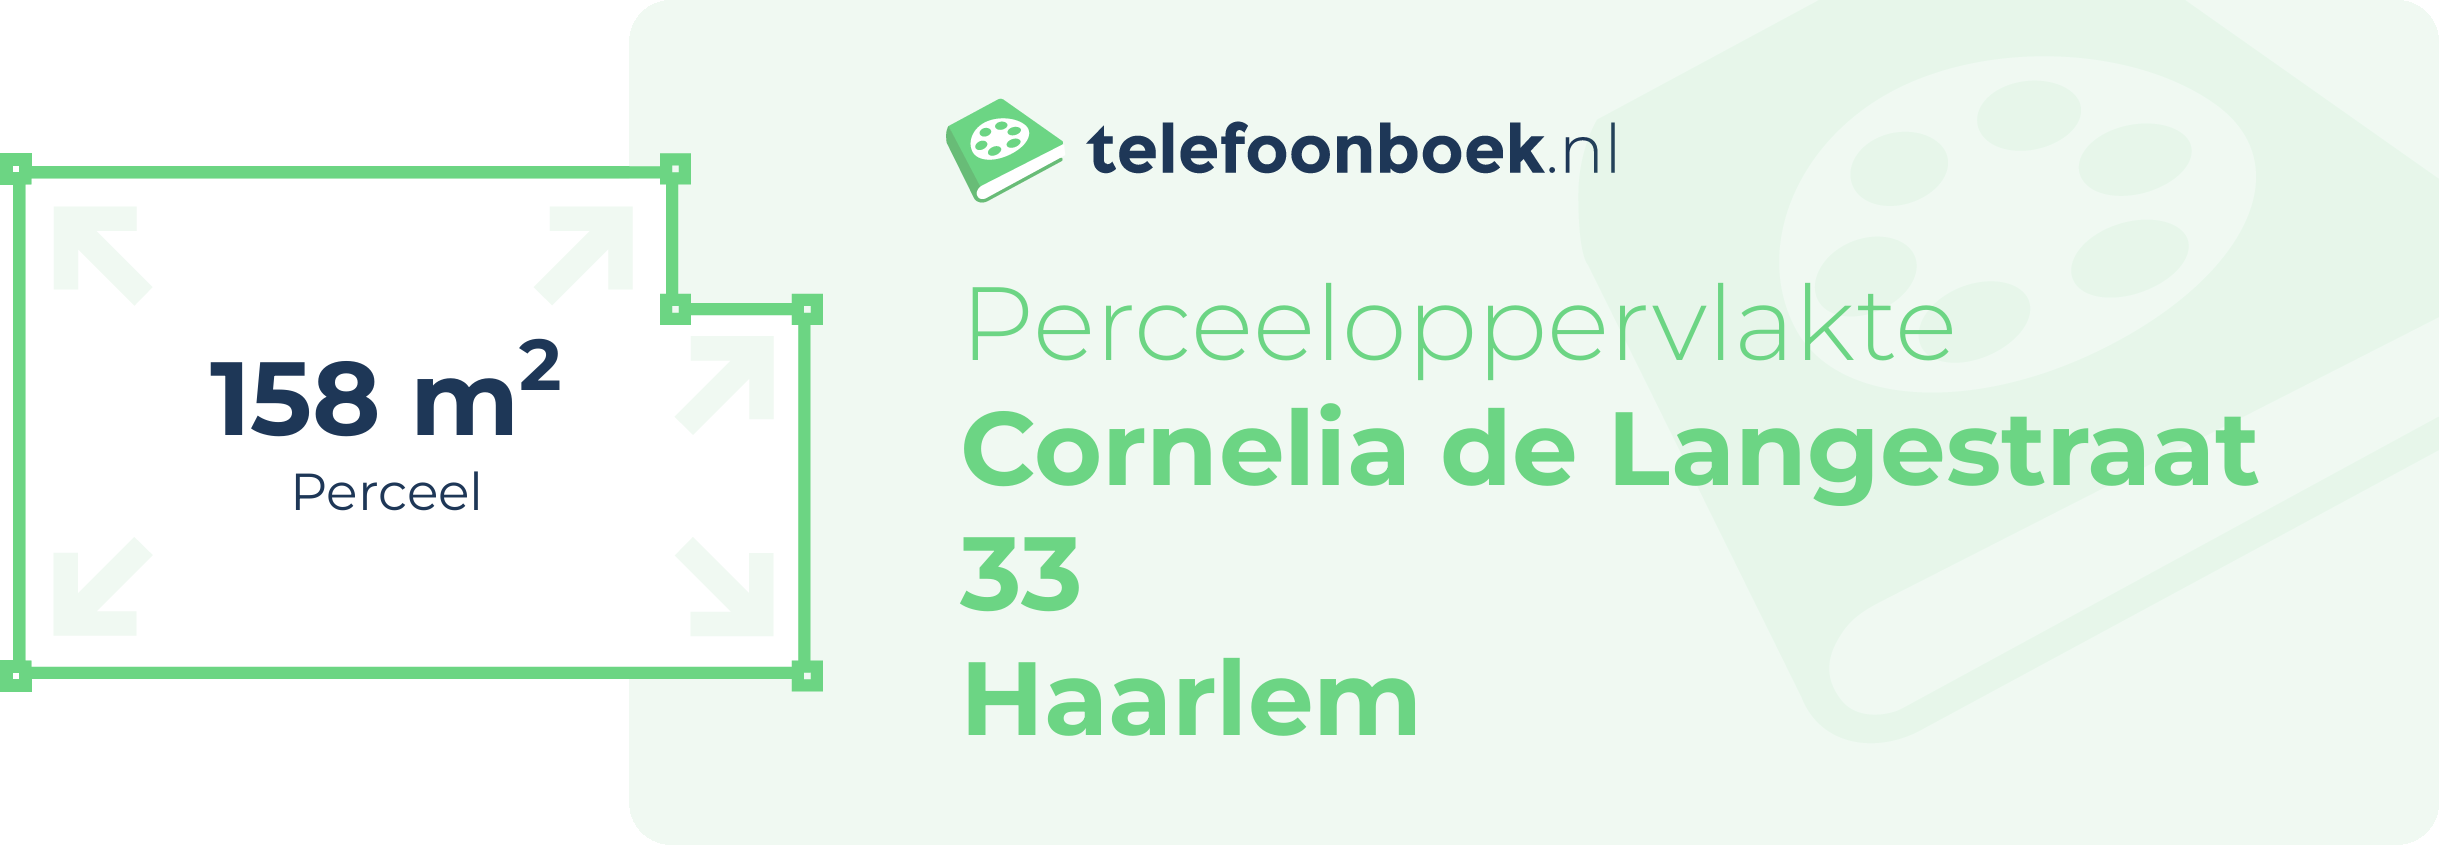 Perceeloppervlakte Cornelia De Langestraat 33 Haarlem